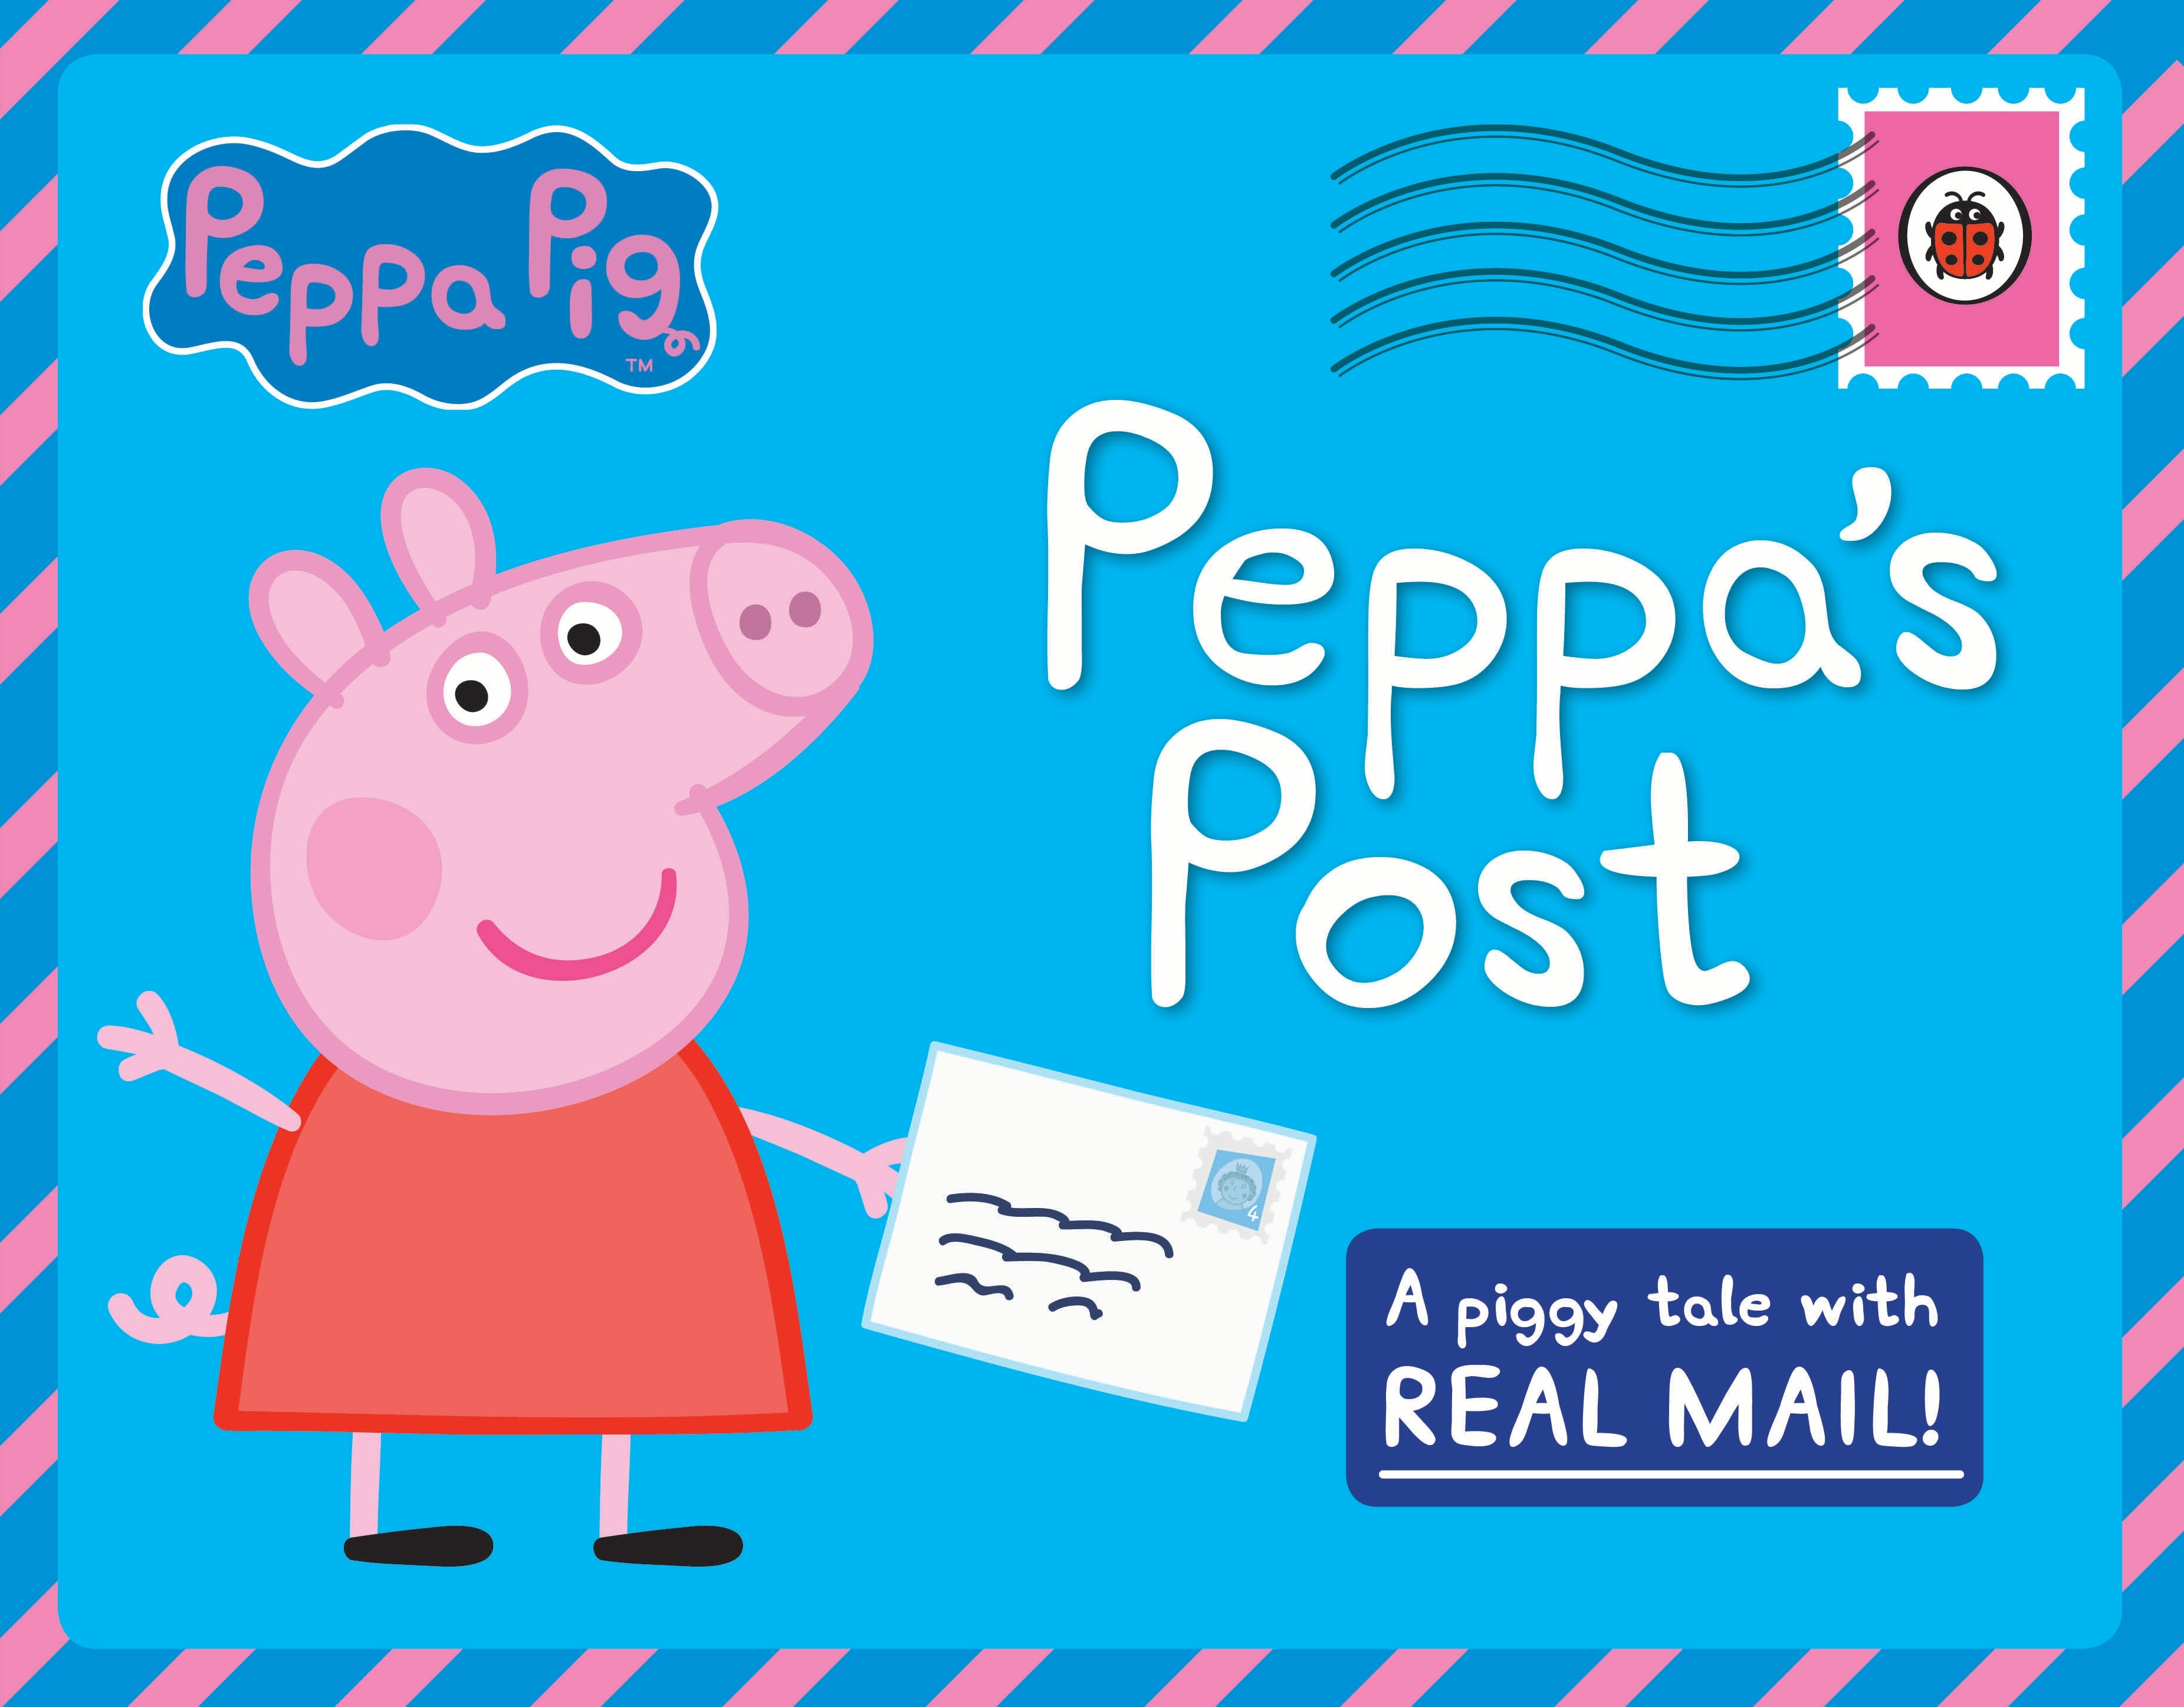 Book “Peppa Pig: Peppa's Post” by Peppa Pig — October 1, 2015